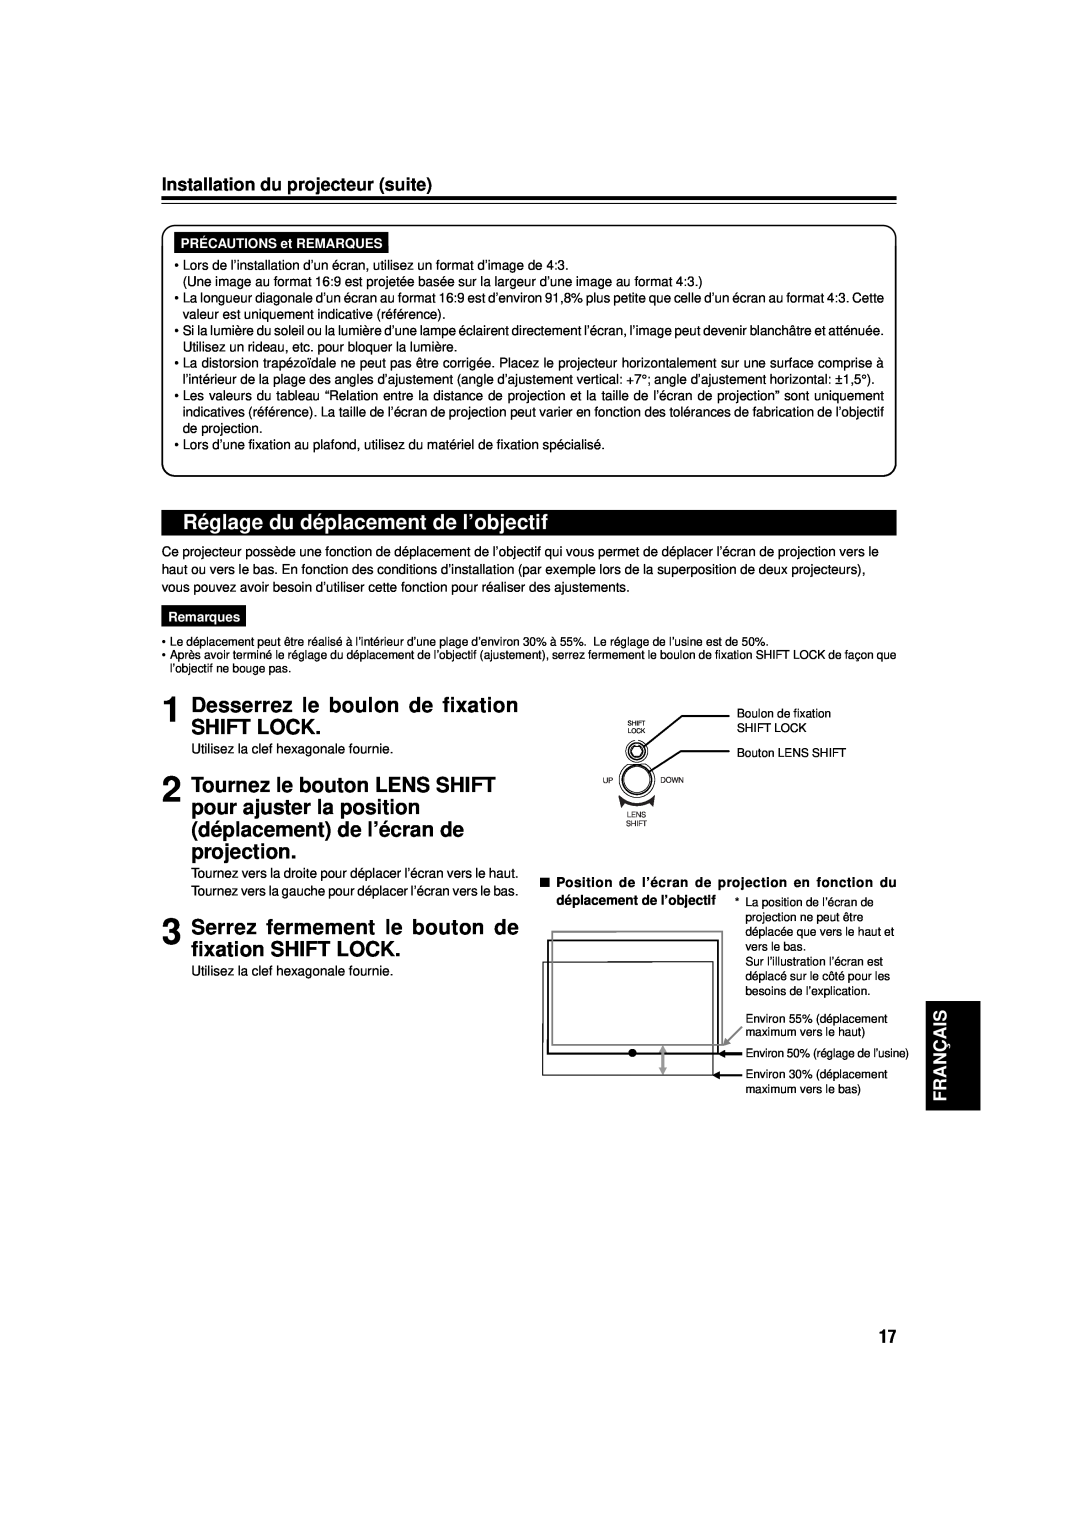 JVC DLA-M15U manual Réglage du déplacement de l’objectif, Desserrez le boulon de fixation SHIFT LOCK, Français, Remarques 